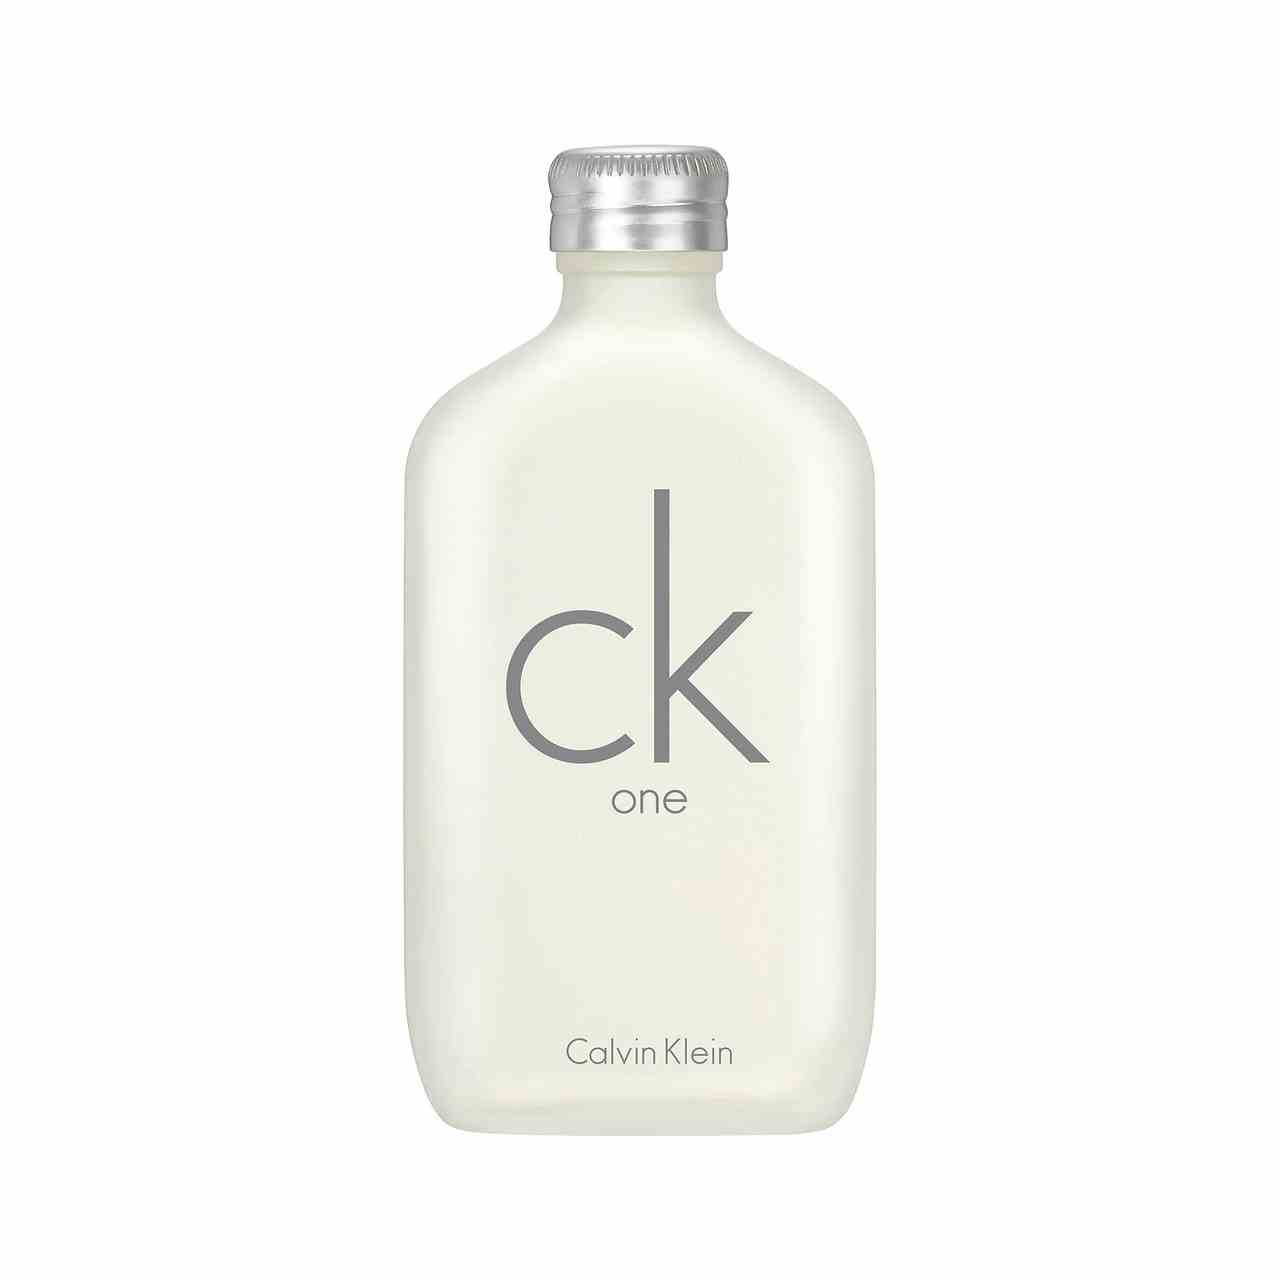 Calvin Klein CK One aus weißer Flasche mit silbernem Verschluss auf weißem Hintergrund